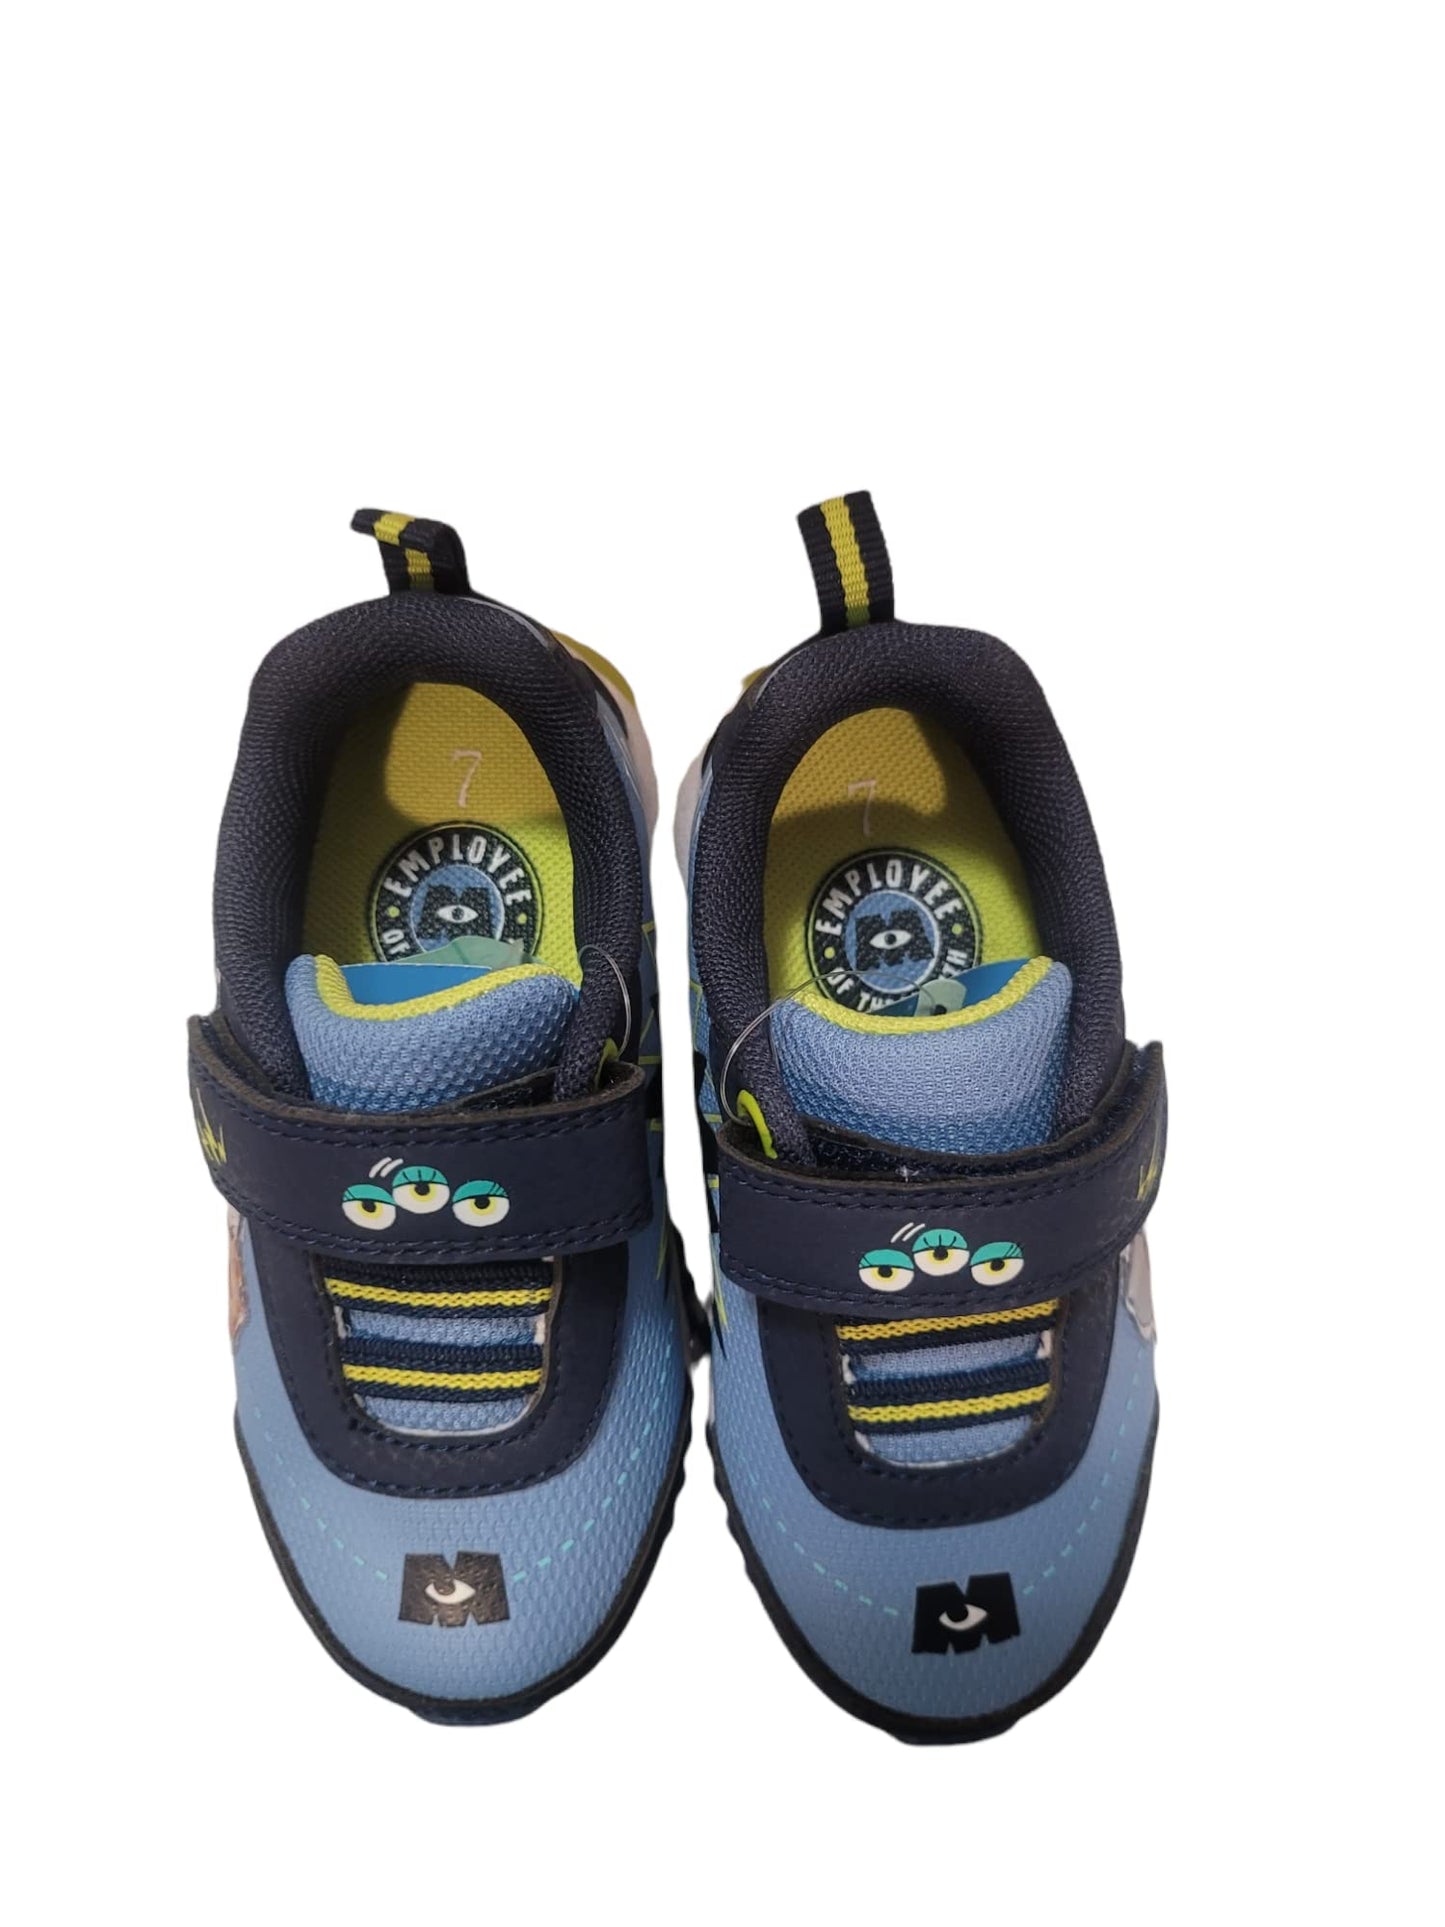 Disney Monster University Boy's Lighted Athletic Sneaker (Toddler/Little Kid)